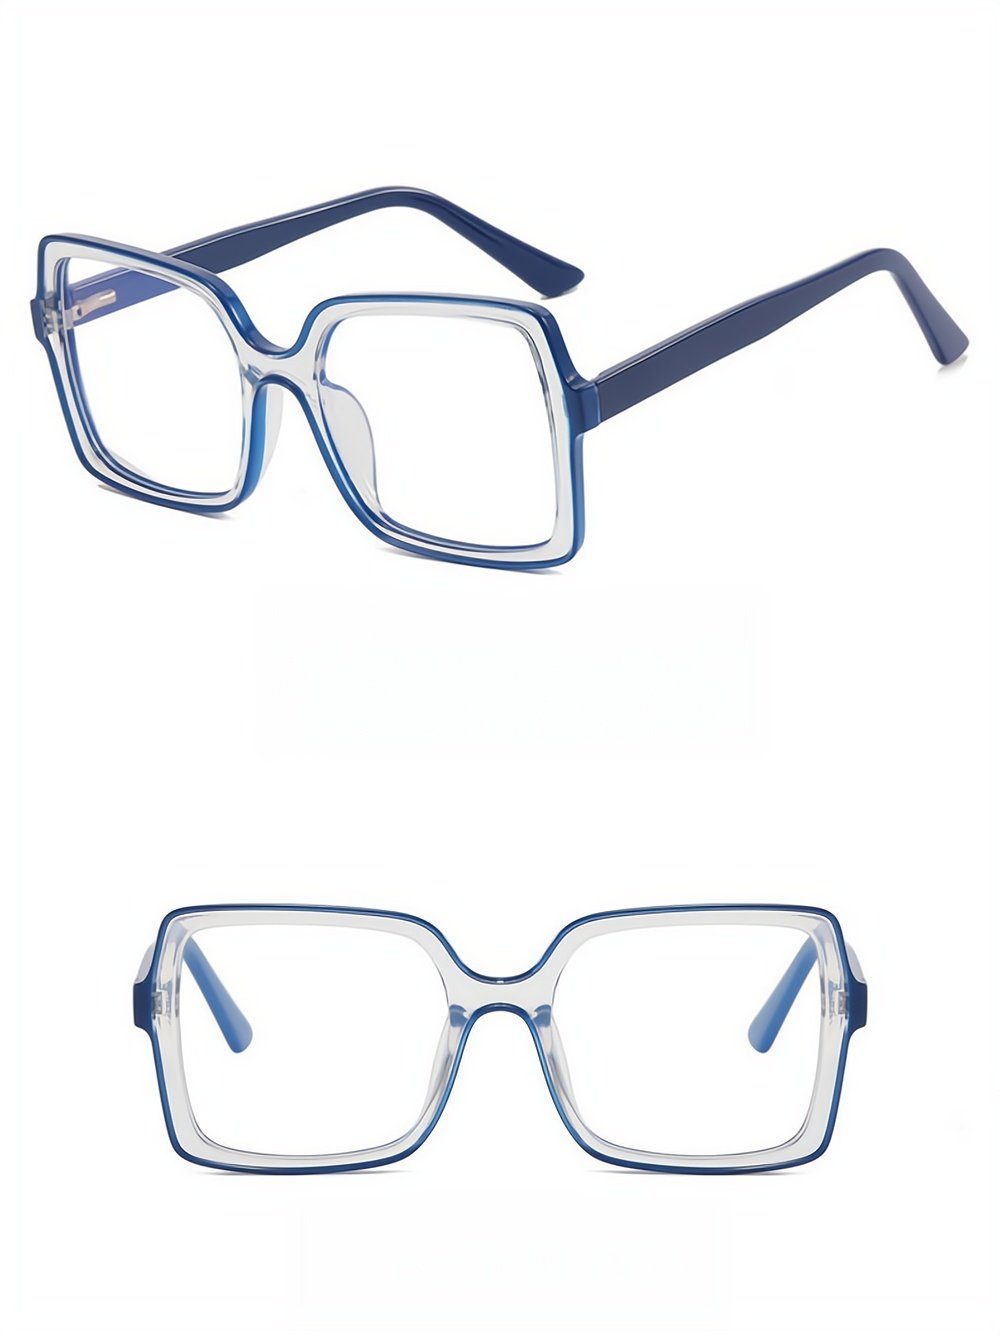 PACIEA Brille Blaulichtfilter Transparente Anti-Müdigkeit Computer Gaming Schutz | Brillengestelle